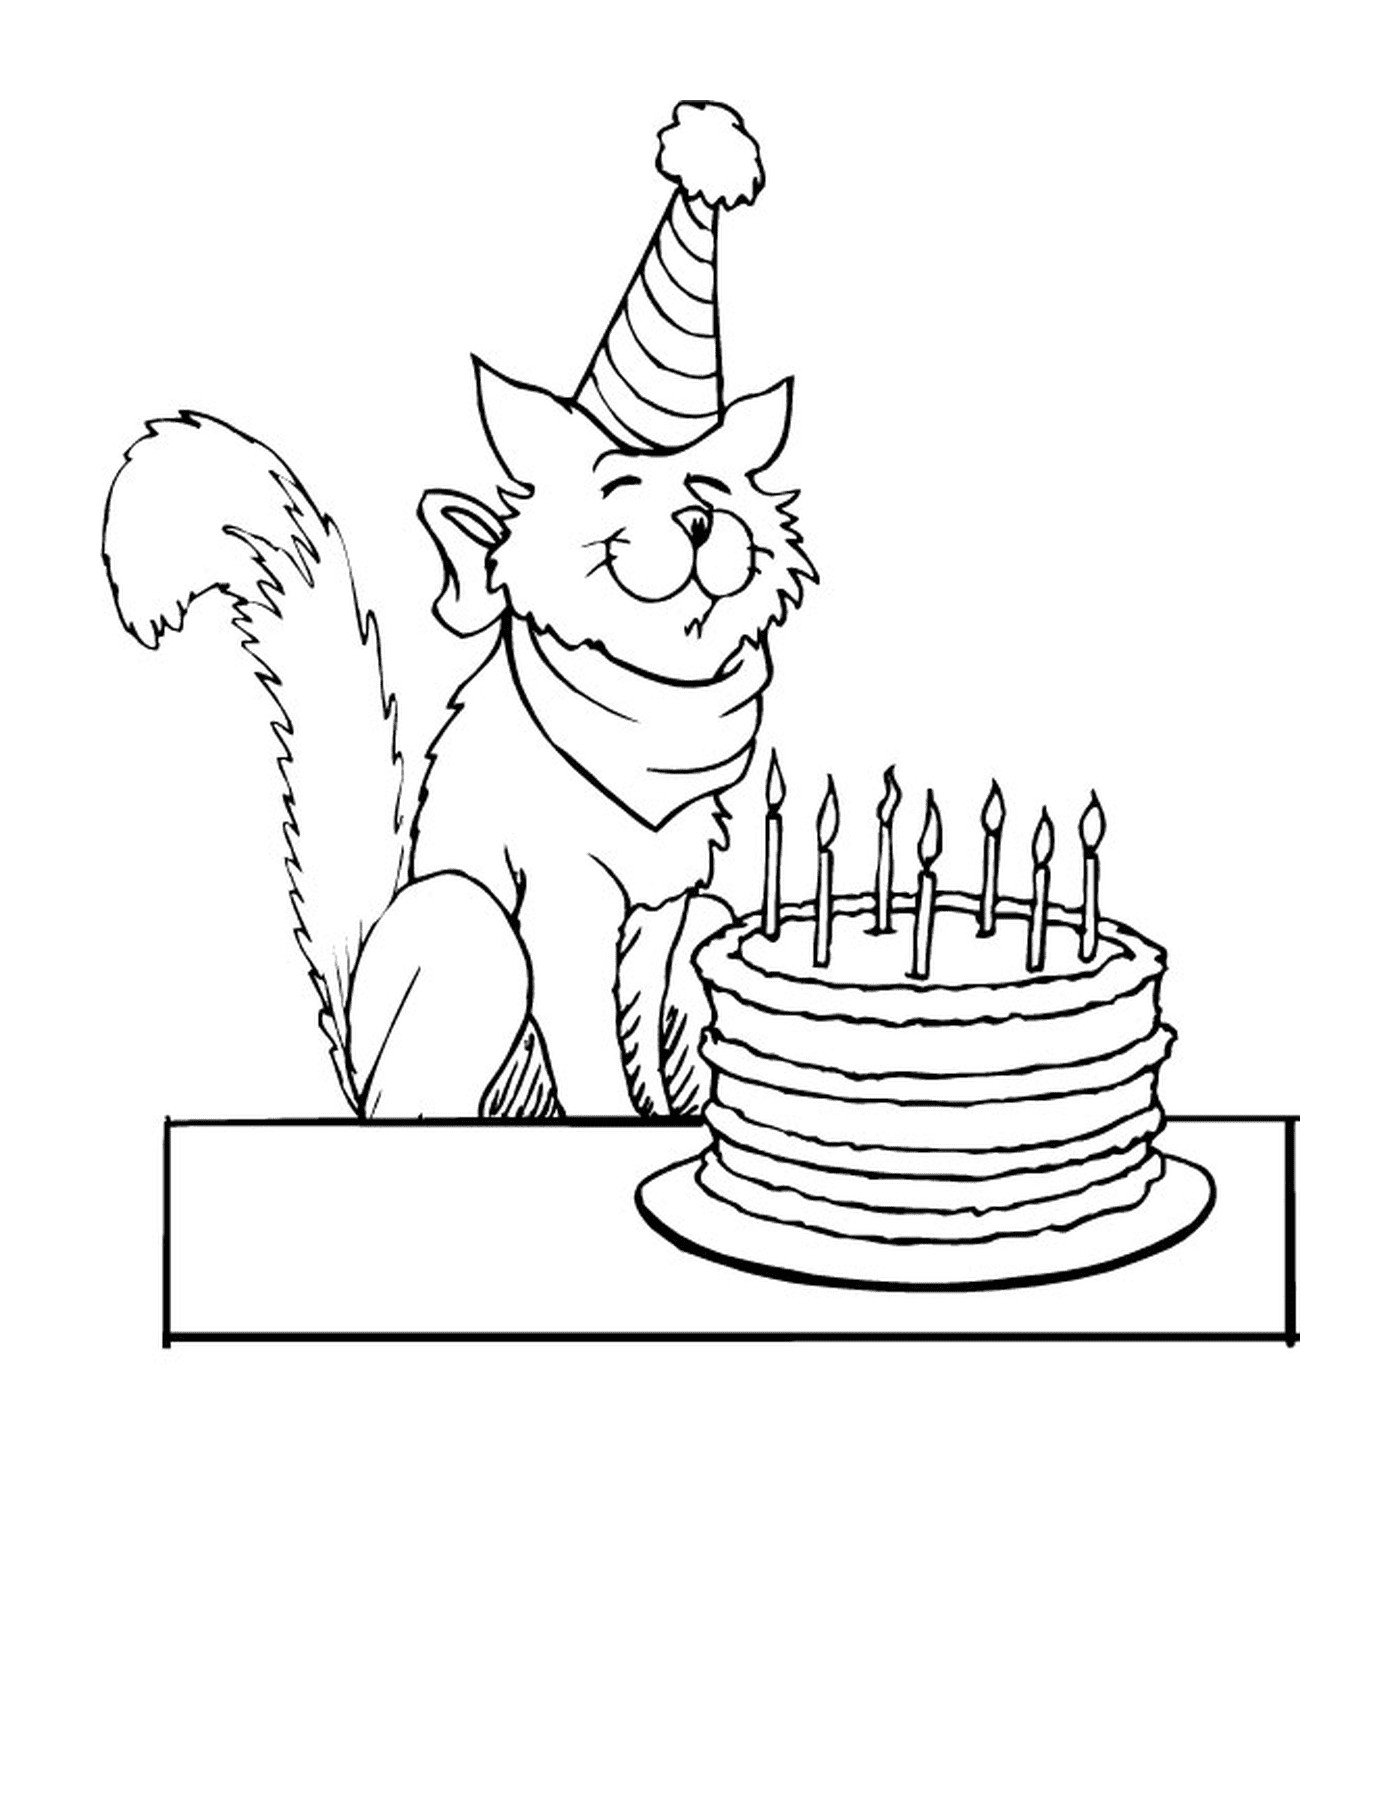  un gatto seduto accanto ad una torta con candele 